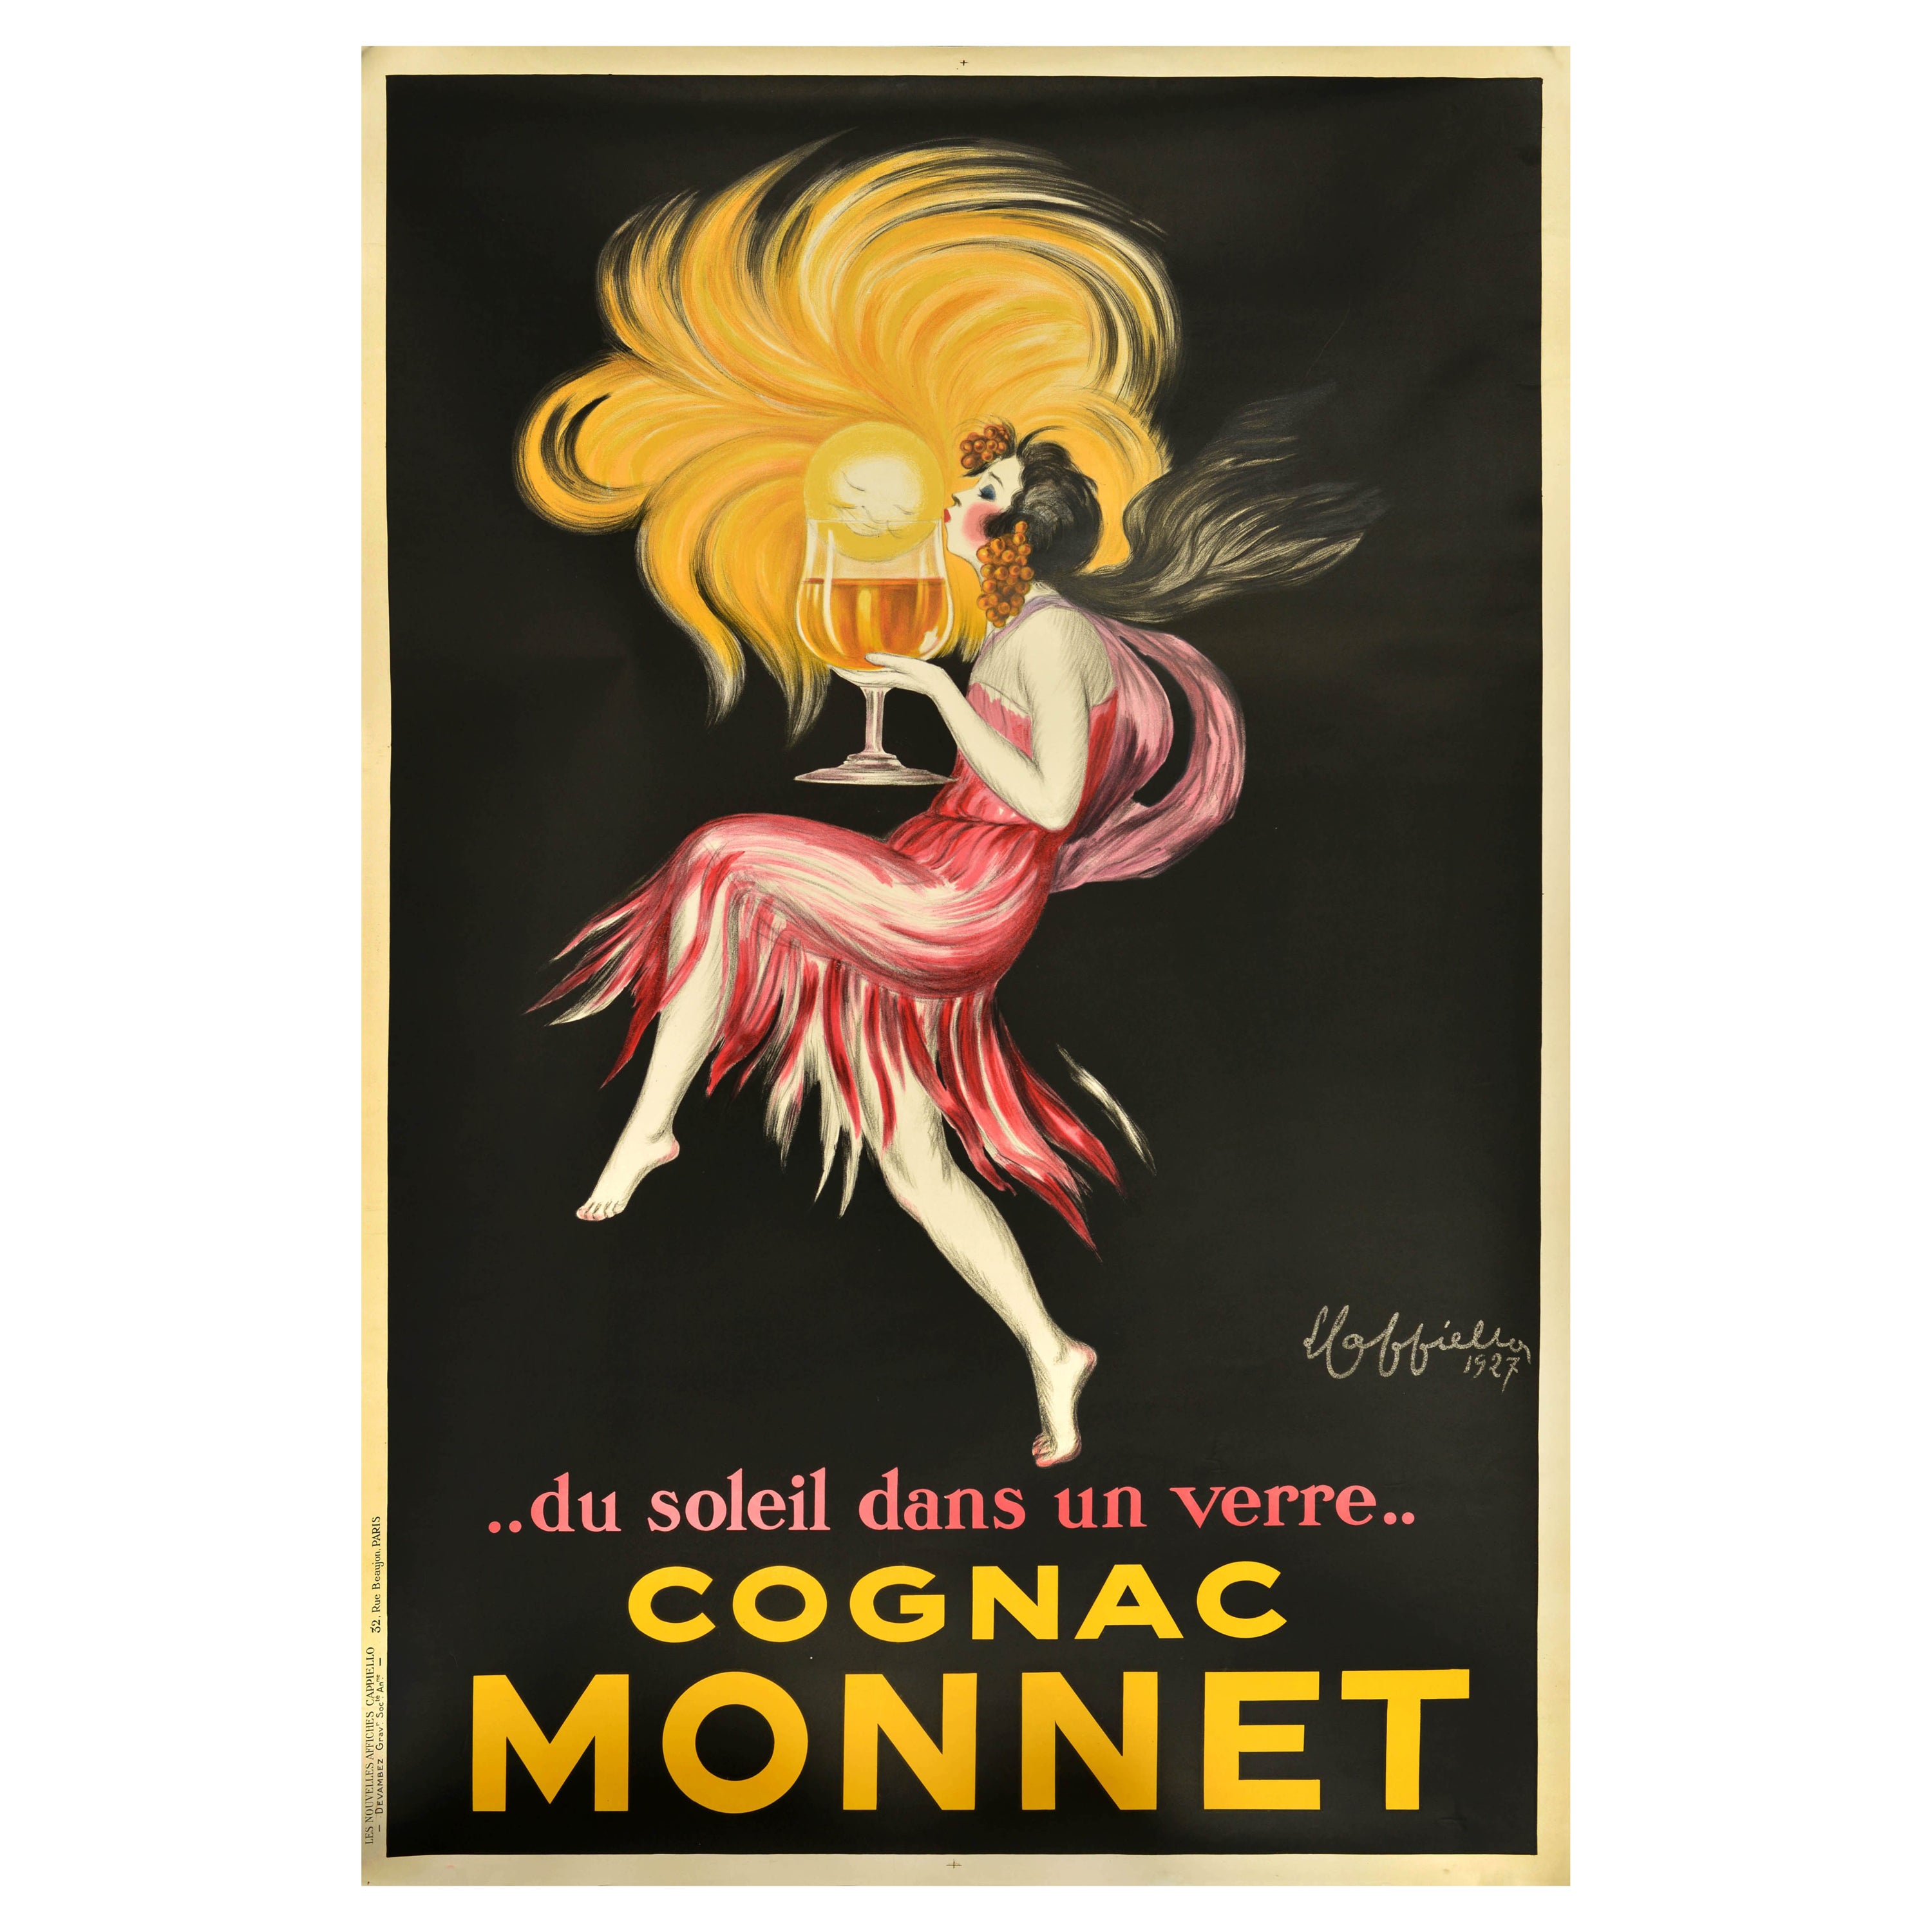 Affiche publicitaire originale pour les boissons Cognac Monnet Leonetto Cappiello